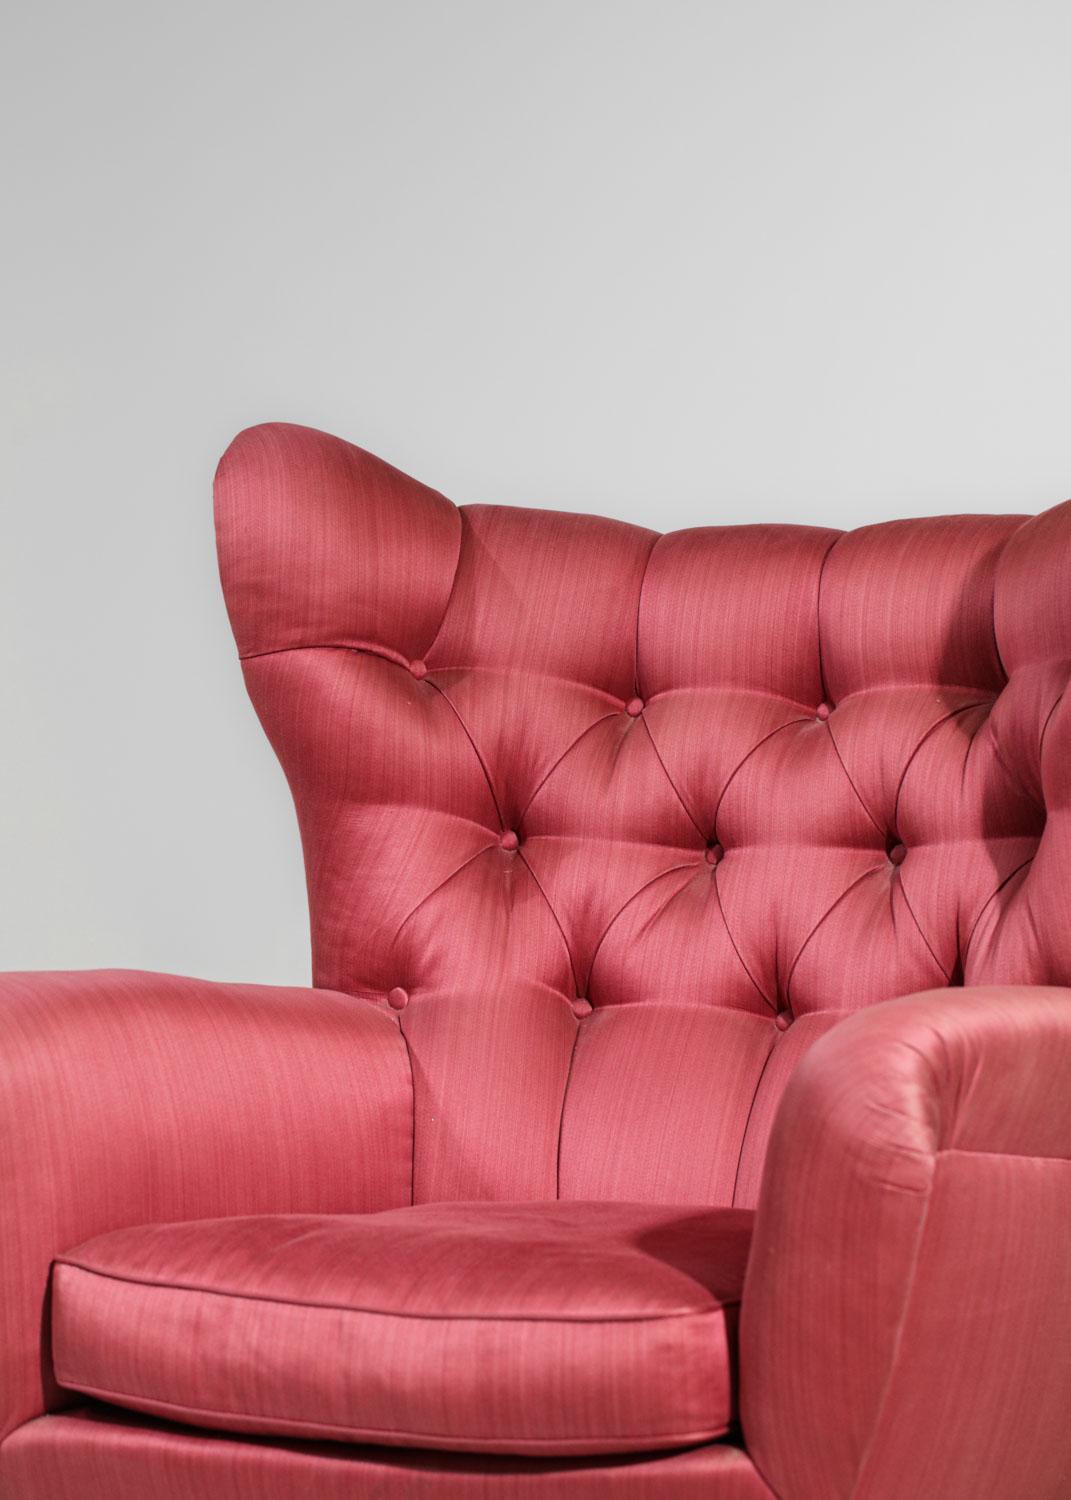 Imposanter italienischer Sessel, der Melchiorre BEGA aus den 50er Jahren zugeschrieben wird. Die Beine sind aus Massivholz, er ist vollständig mit einem originalen rot/rosa Stoff bezogen und im oberen Teil des Sessels gepolstert. Sehr schöner